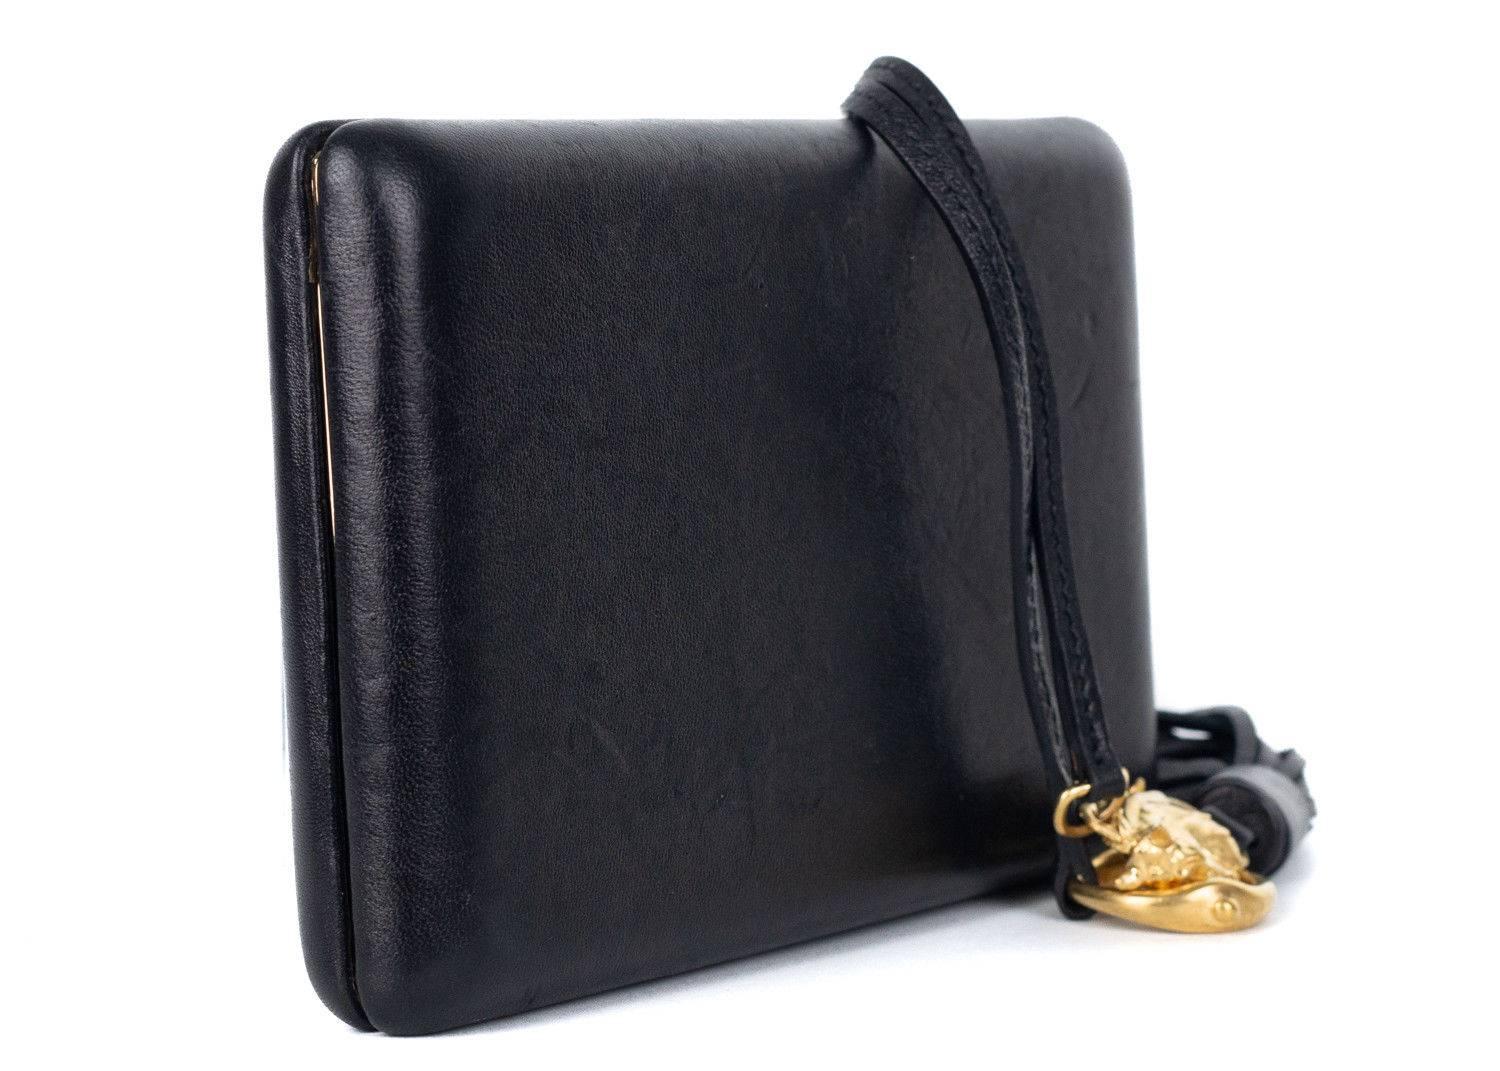 Men's Roberto Cavalli Solid Black Leather Fringe Clutch Bag For Sale